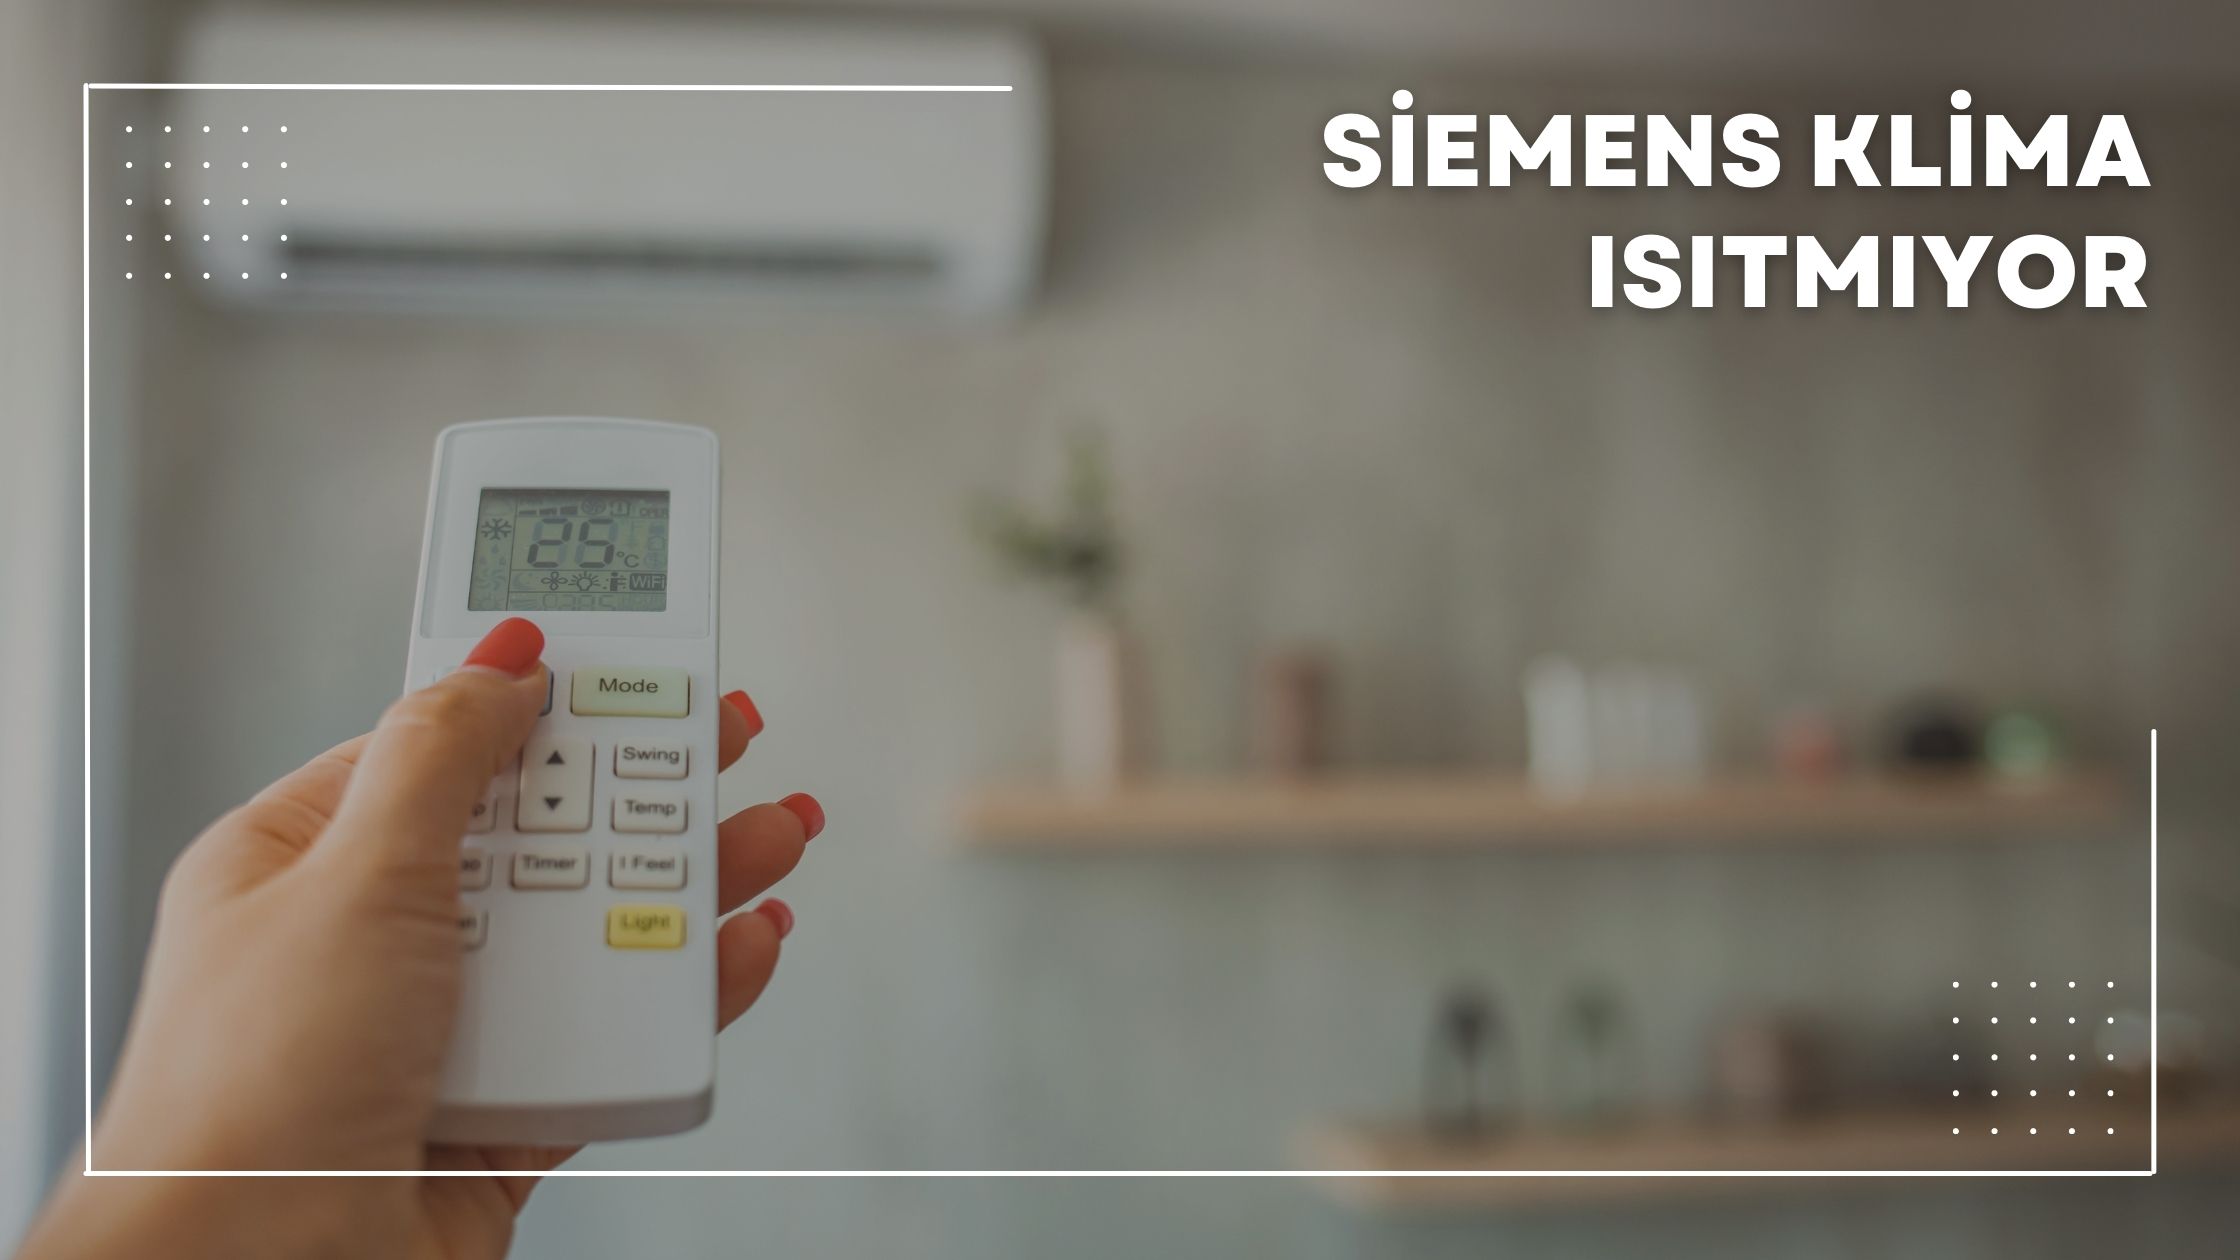 Siemens Klima Isıtmıyor